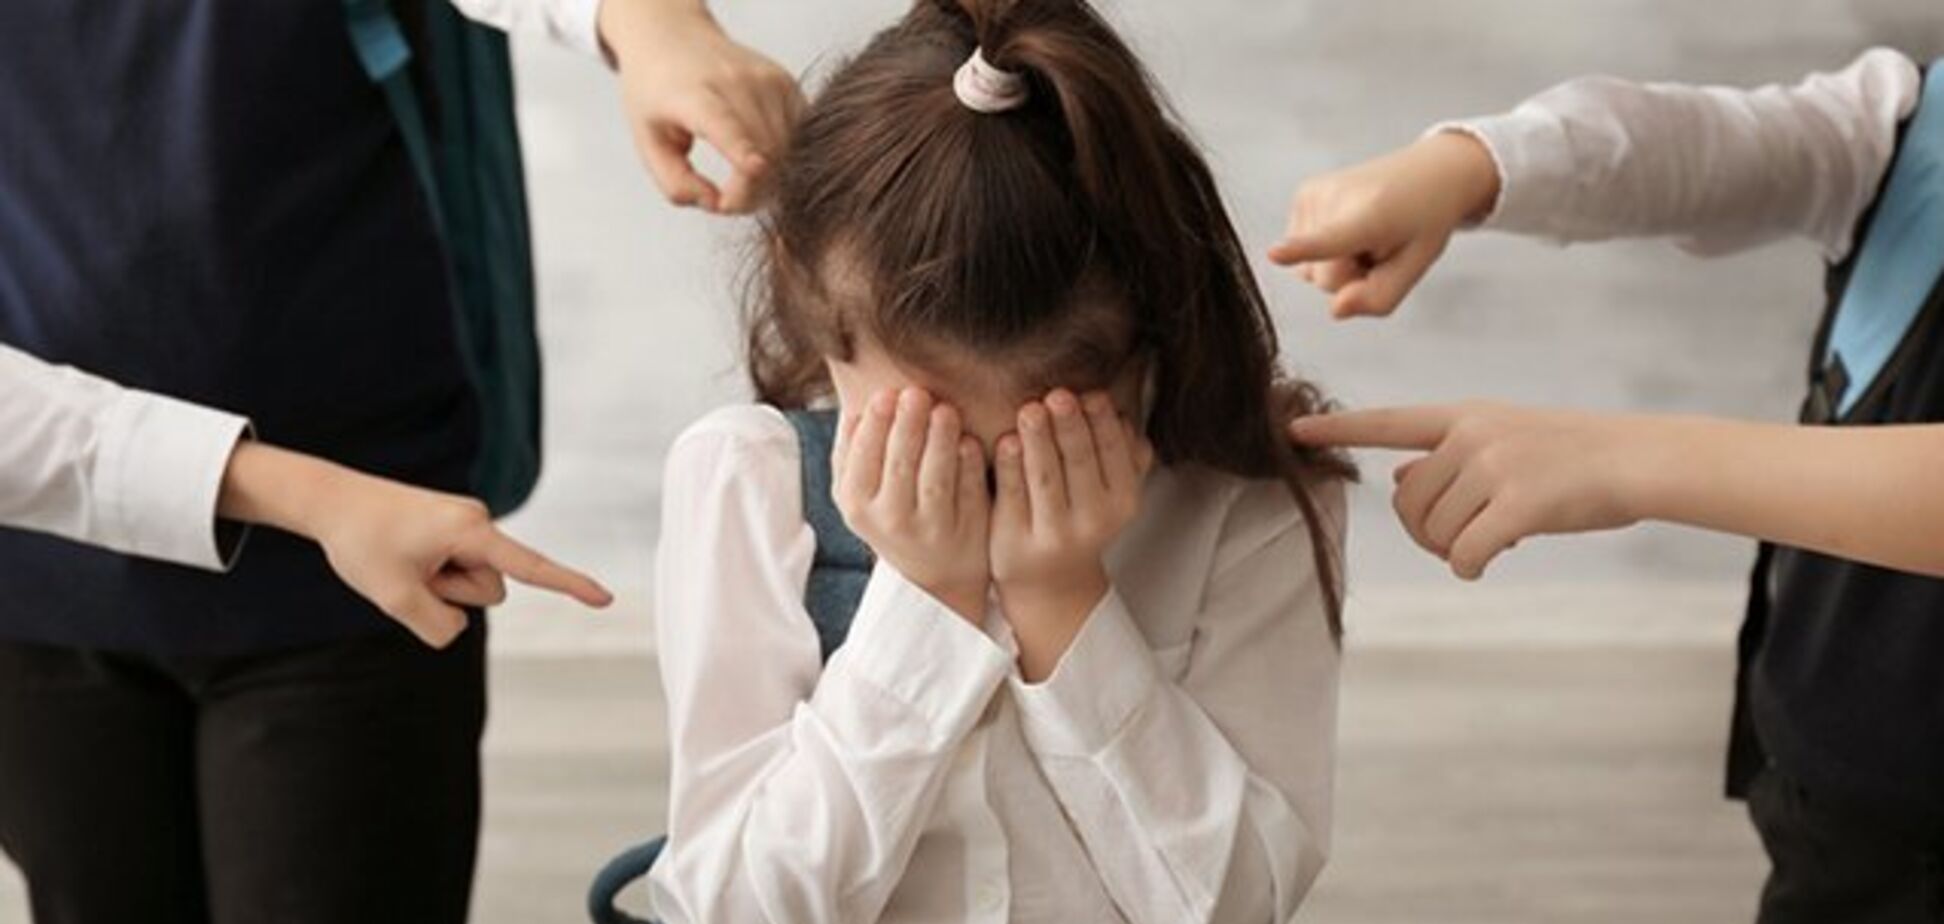  'С*ка двуличная!' В школе Одессы затравили девочку и пообещали ее 'добить'